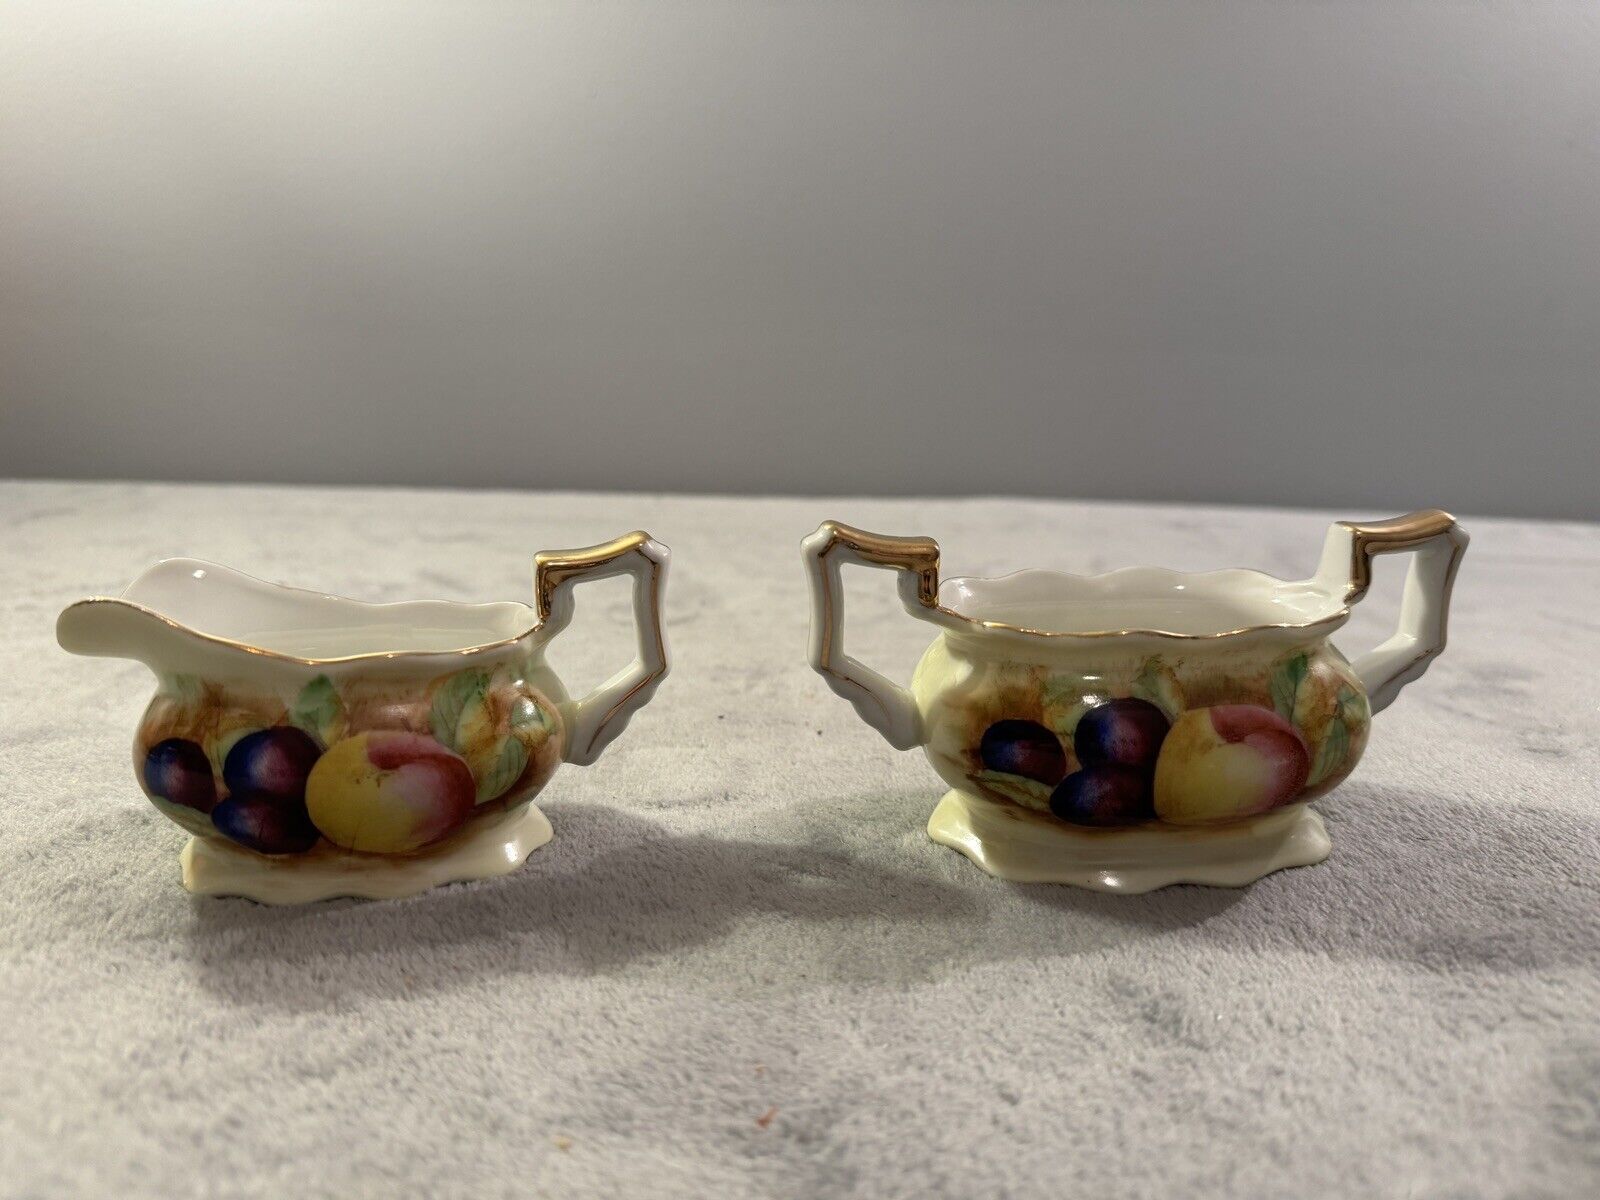 Rare Vintage Made In Occupied Japan Porcelain Gold Trimmed Creamer & Sugar Bowl